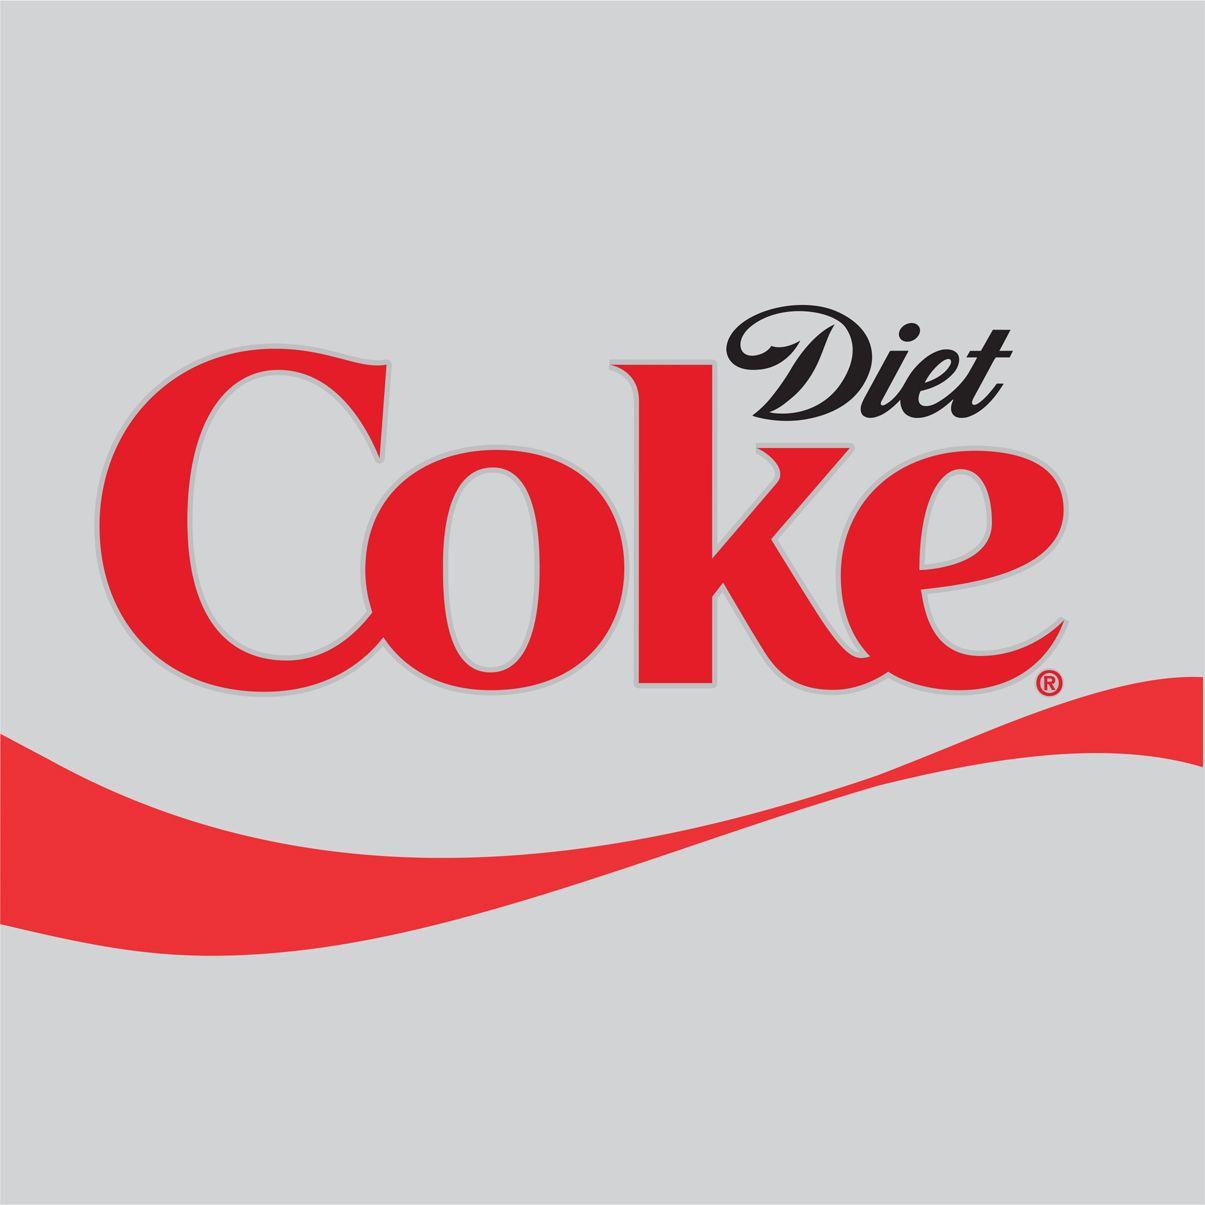 Coke Logo - Diet Coke LOGO